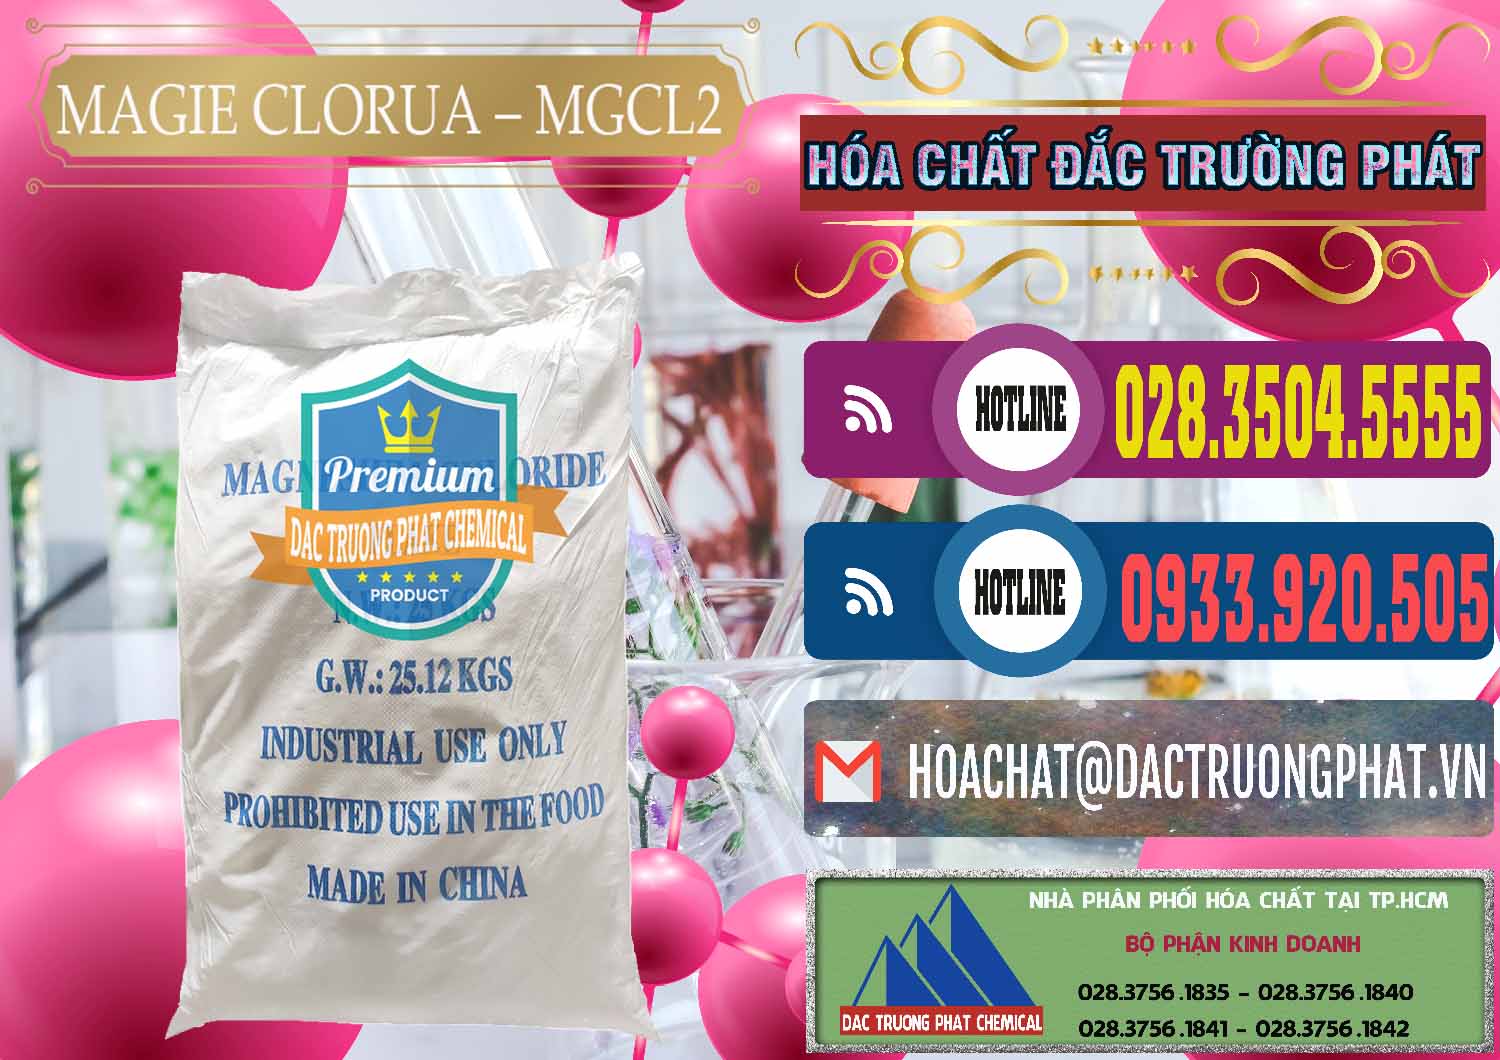 Cty cung cấp ( bán ) Magie Clorua – MGCL2 96% Dạng Vảy Trung Quốc China - 0091 - Nơi chuyên kinh doanh _ cung cấp hóa chất tại TP.HCM - muabanhoachat.com.vn